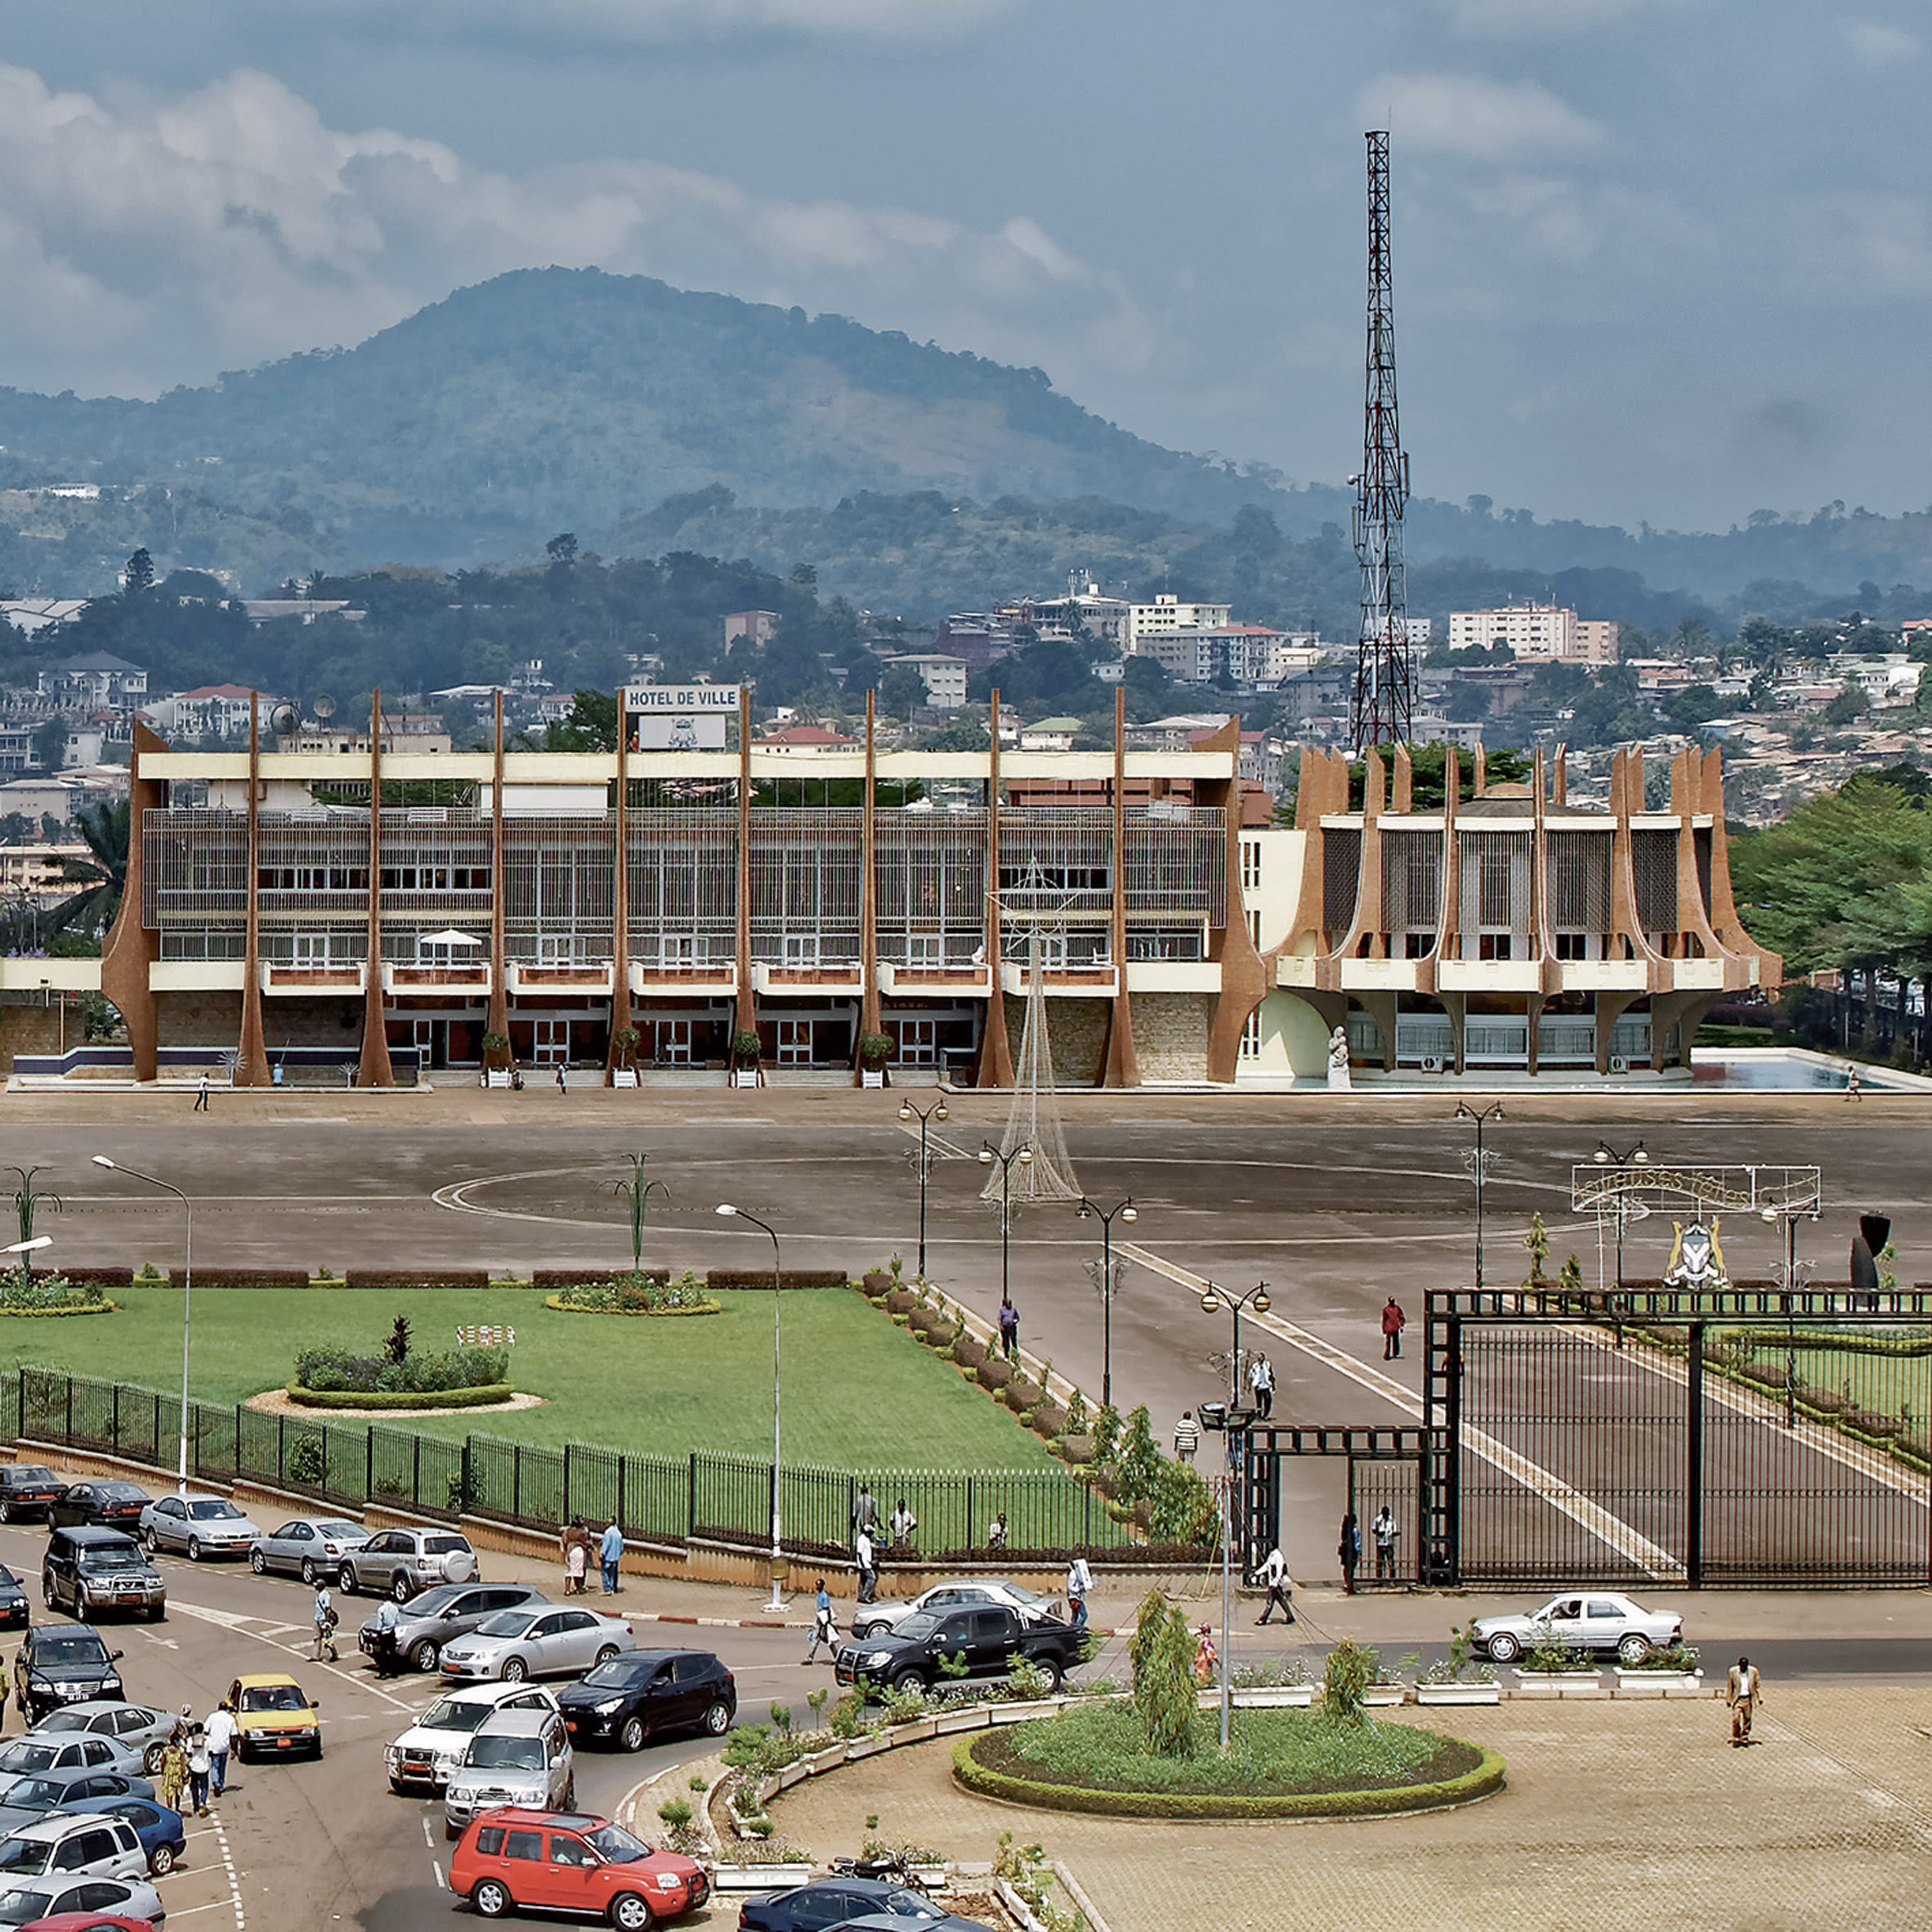 Yaoundé City Hall, Yaoundé, by Armand Salomon